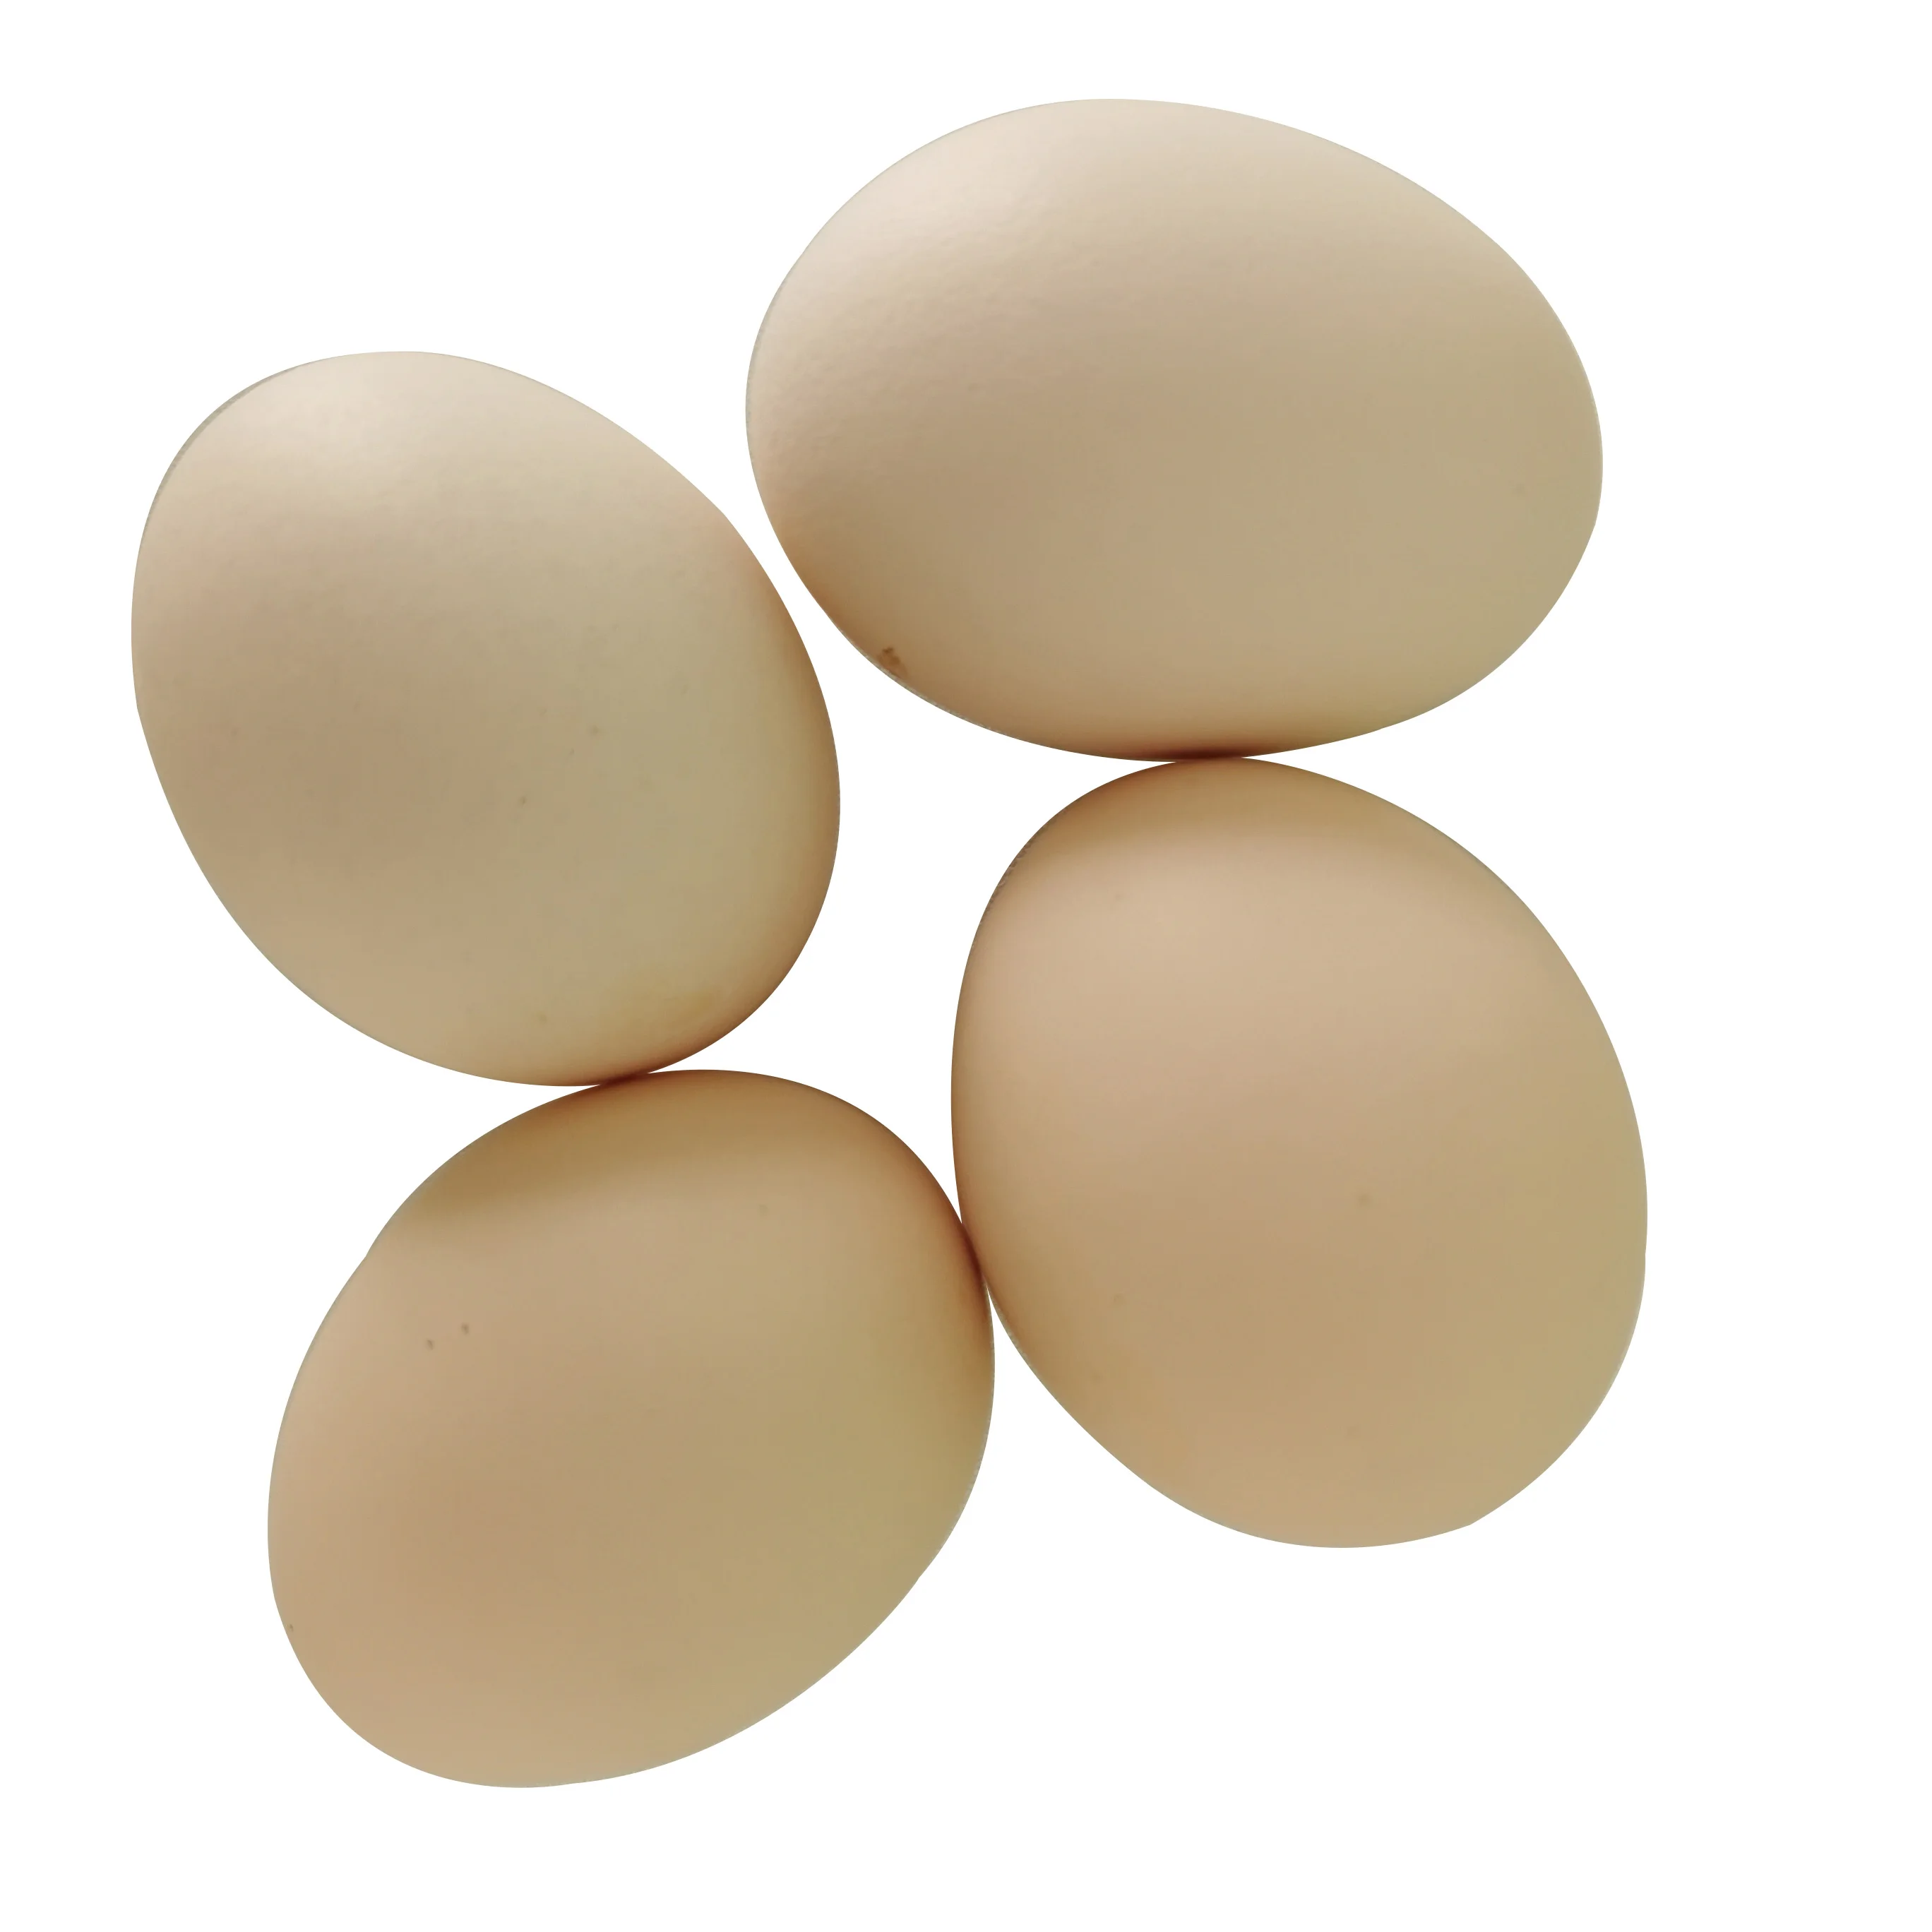 Лучшее качество Органические свежие куриные коричневые столовые яйца